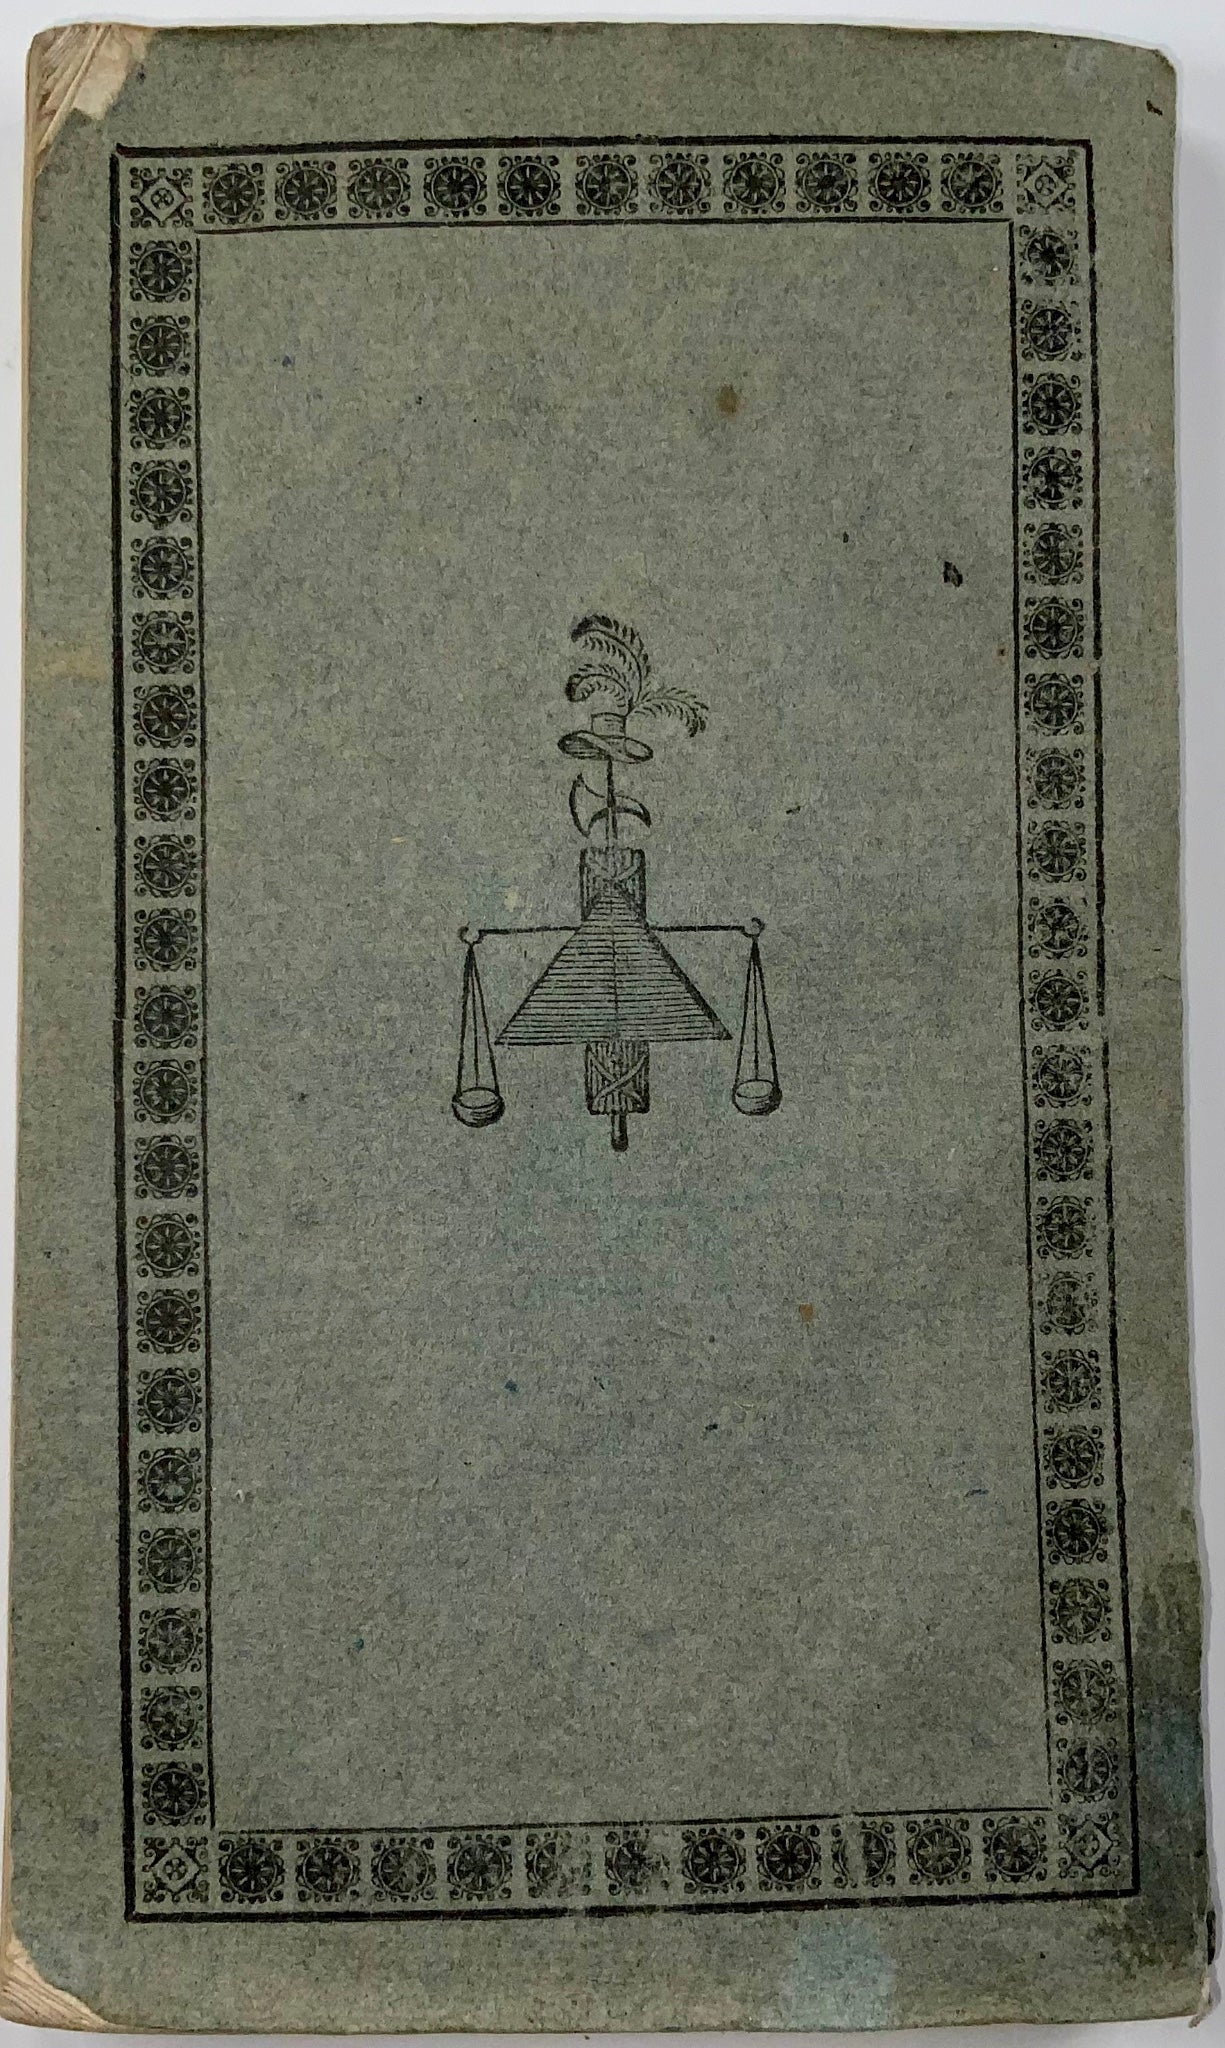 1831 Ouvrage polémique contre la politique dominante à Obwald, Suisse, brochure